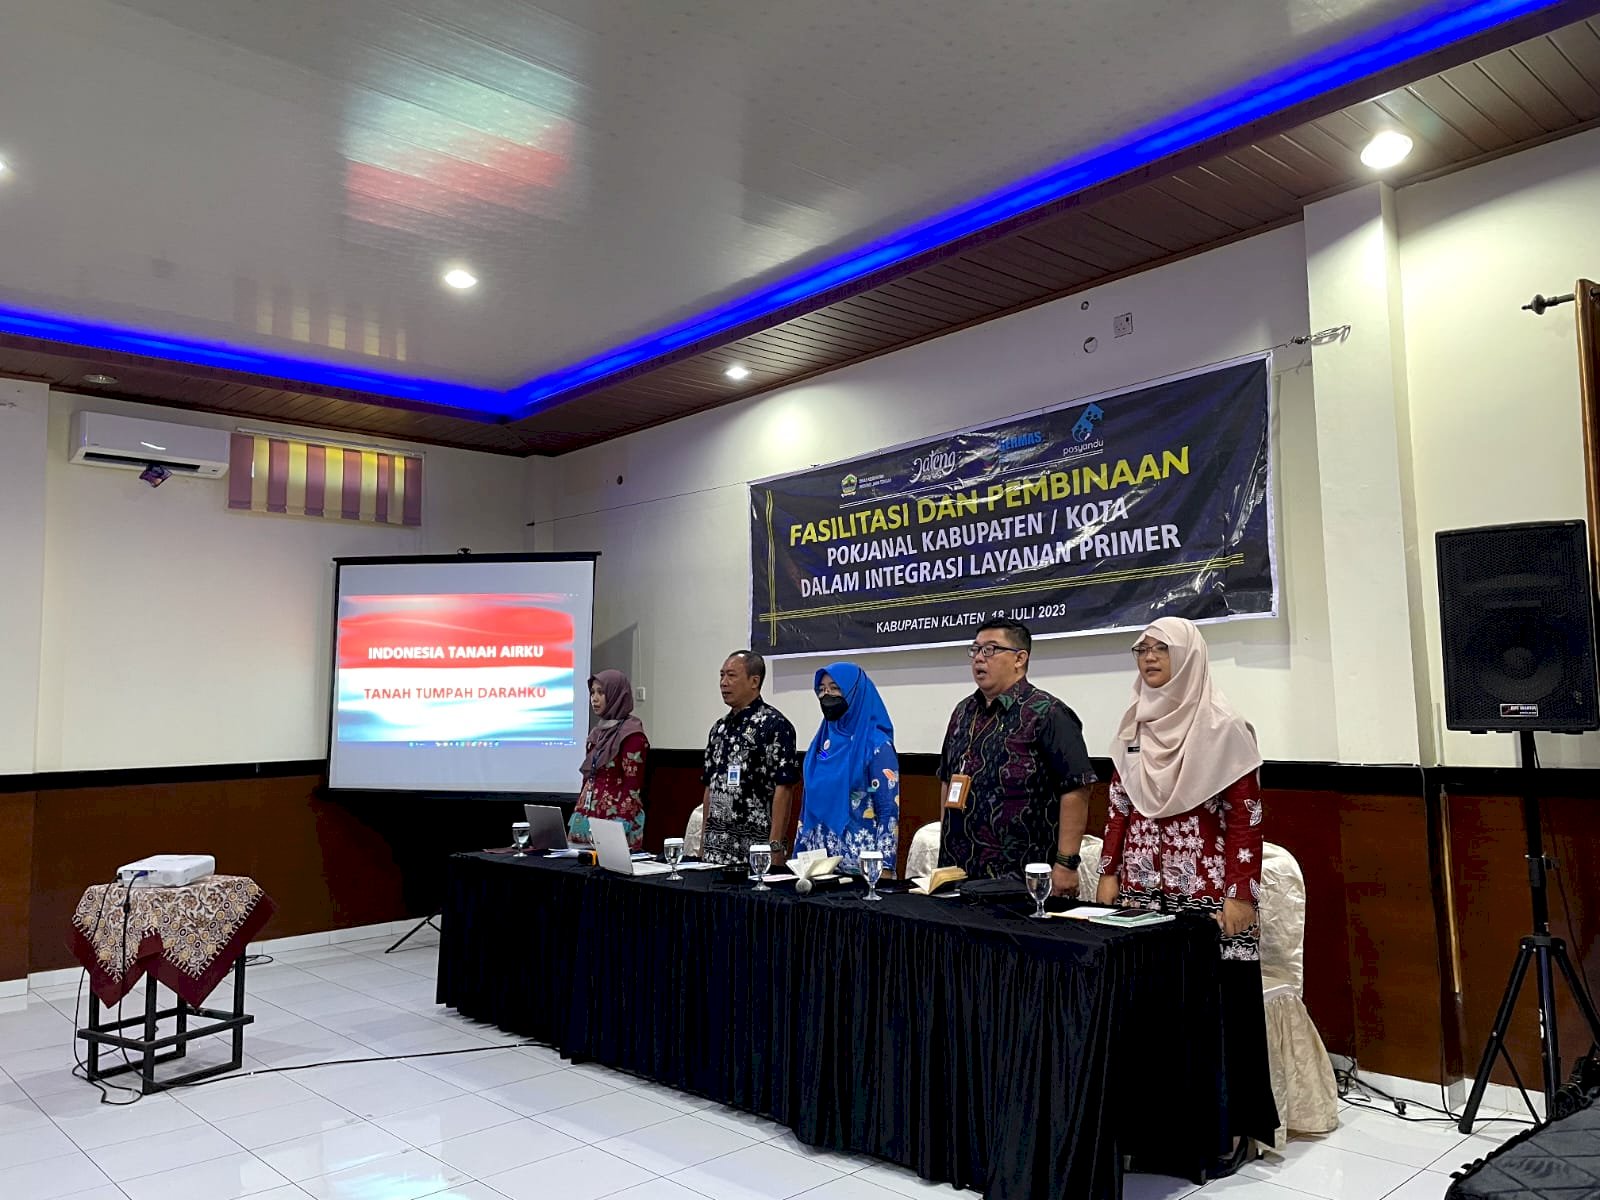 Pertemuan Fasilitasi dan Pembinaan Pokjanal Posyandu Kabupaten/Kota dalam Integrasi Layanan Primer Dinas Kesehatan Klaten Tahun 2023